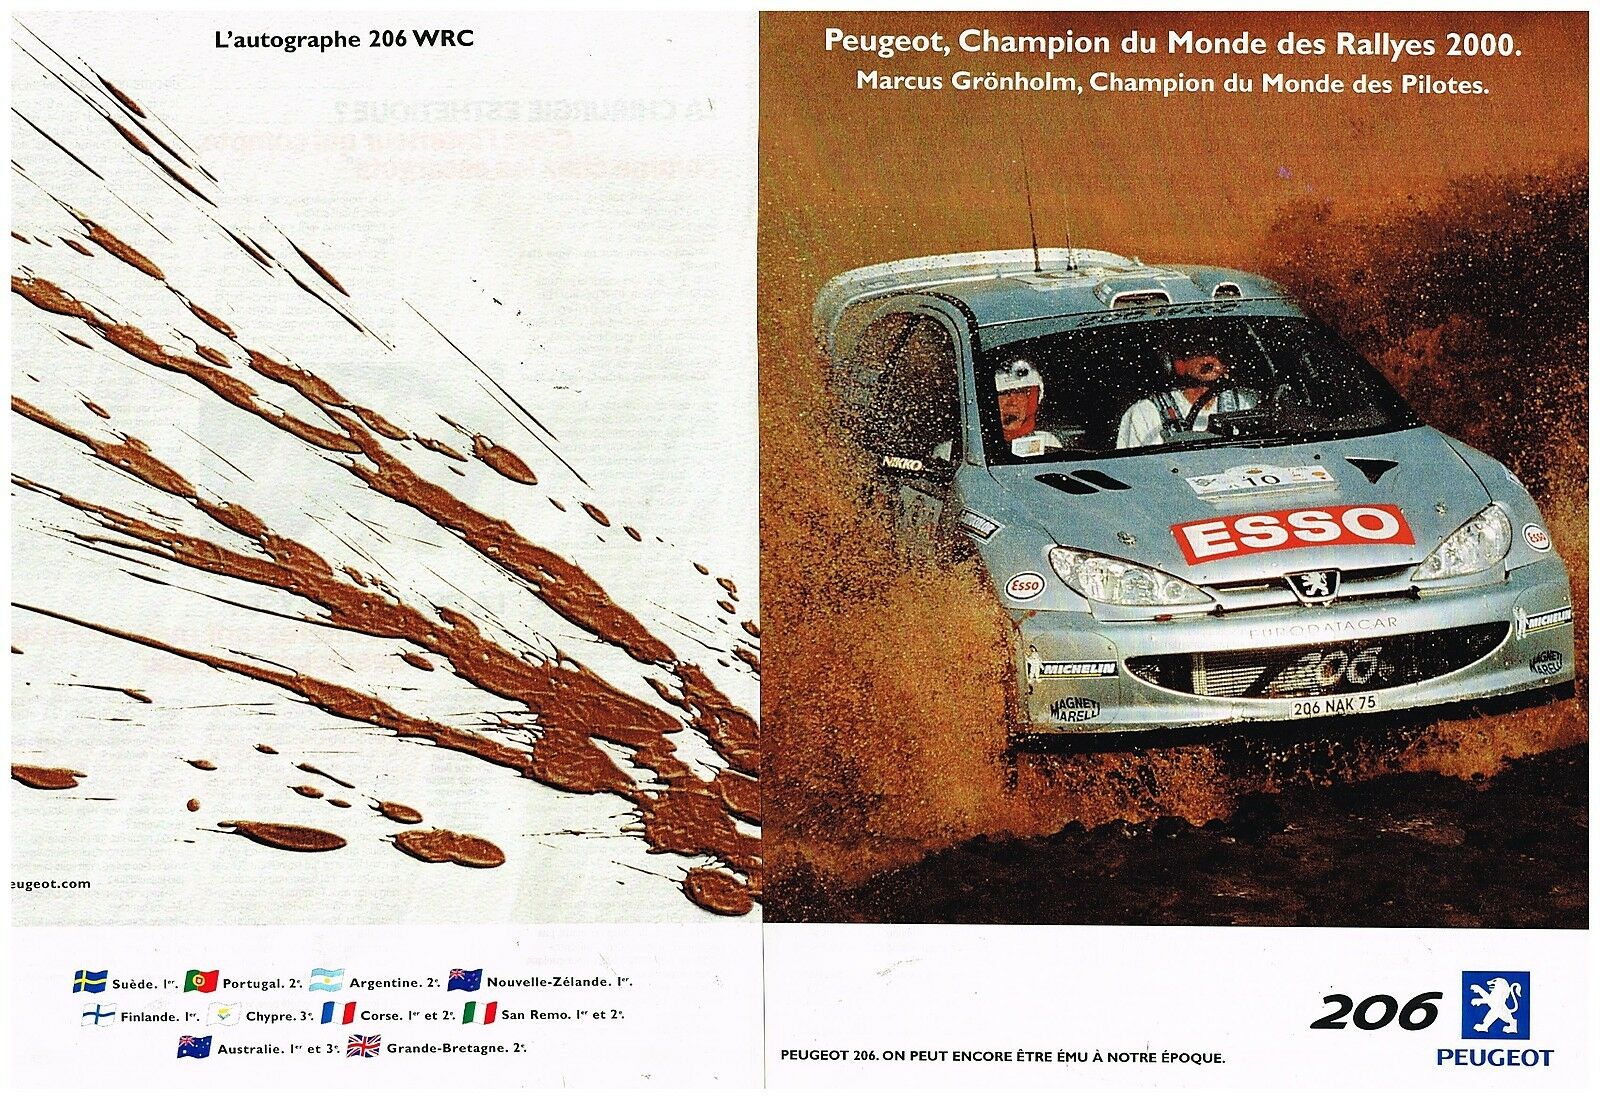 2000 Peugeot 206 WRC